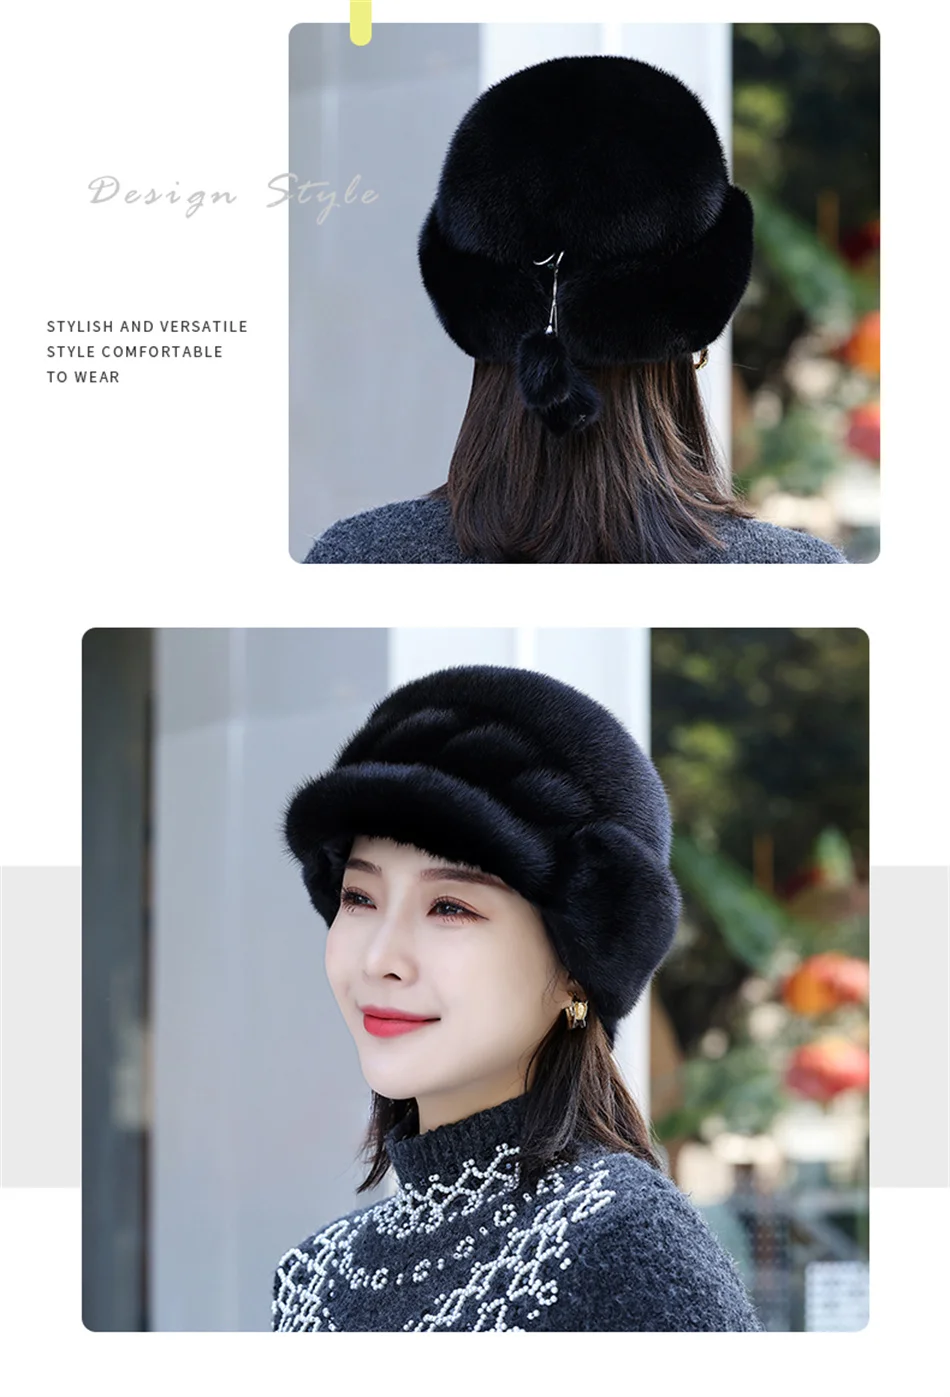 2022 Winter Hat Women Russian Mink Fur Hat Women Outdoor Winter Hat Earmuff Ski Cap Keep Warm Ladies Fur Hat Free Shipping